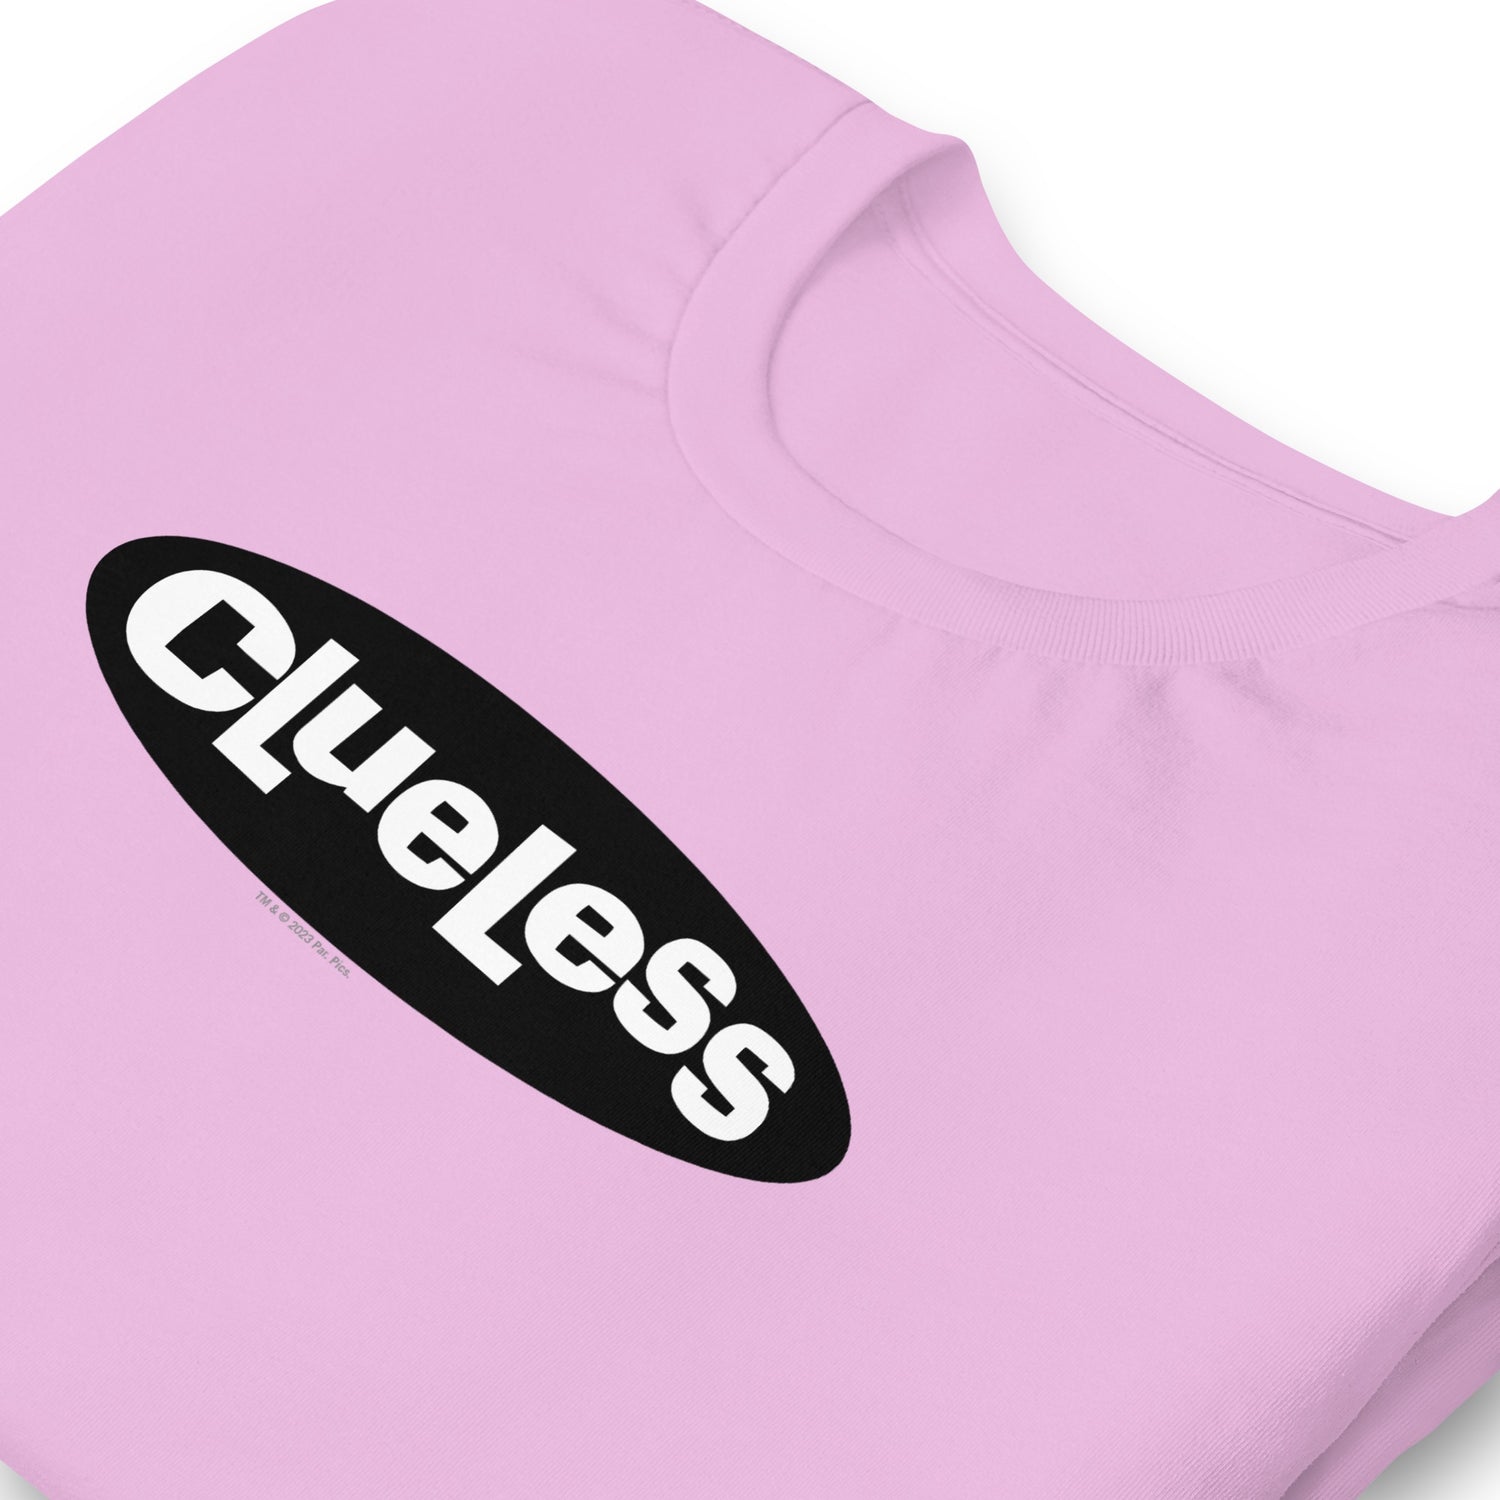 Clueless Logo Adult Short Sleeve T-Shirt